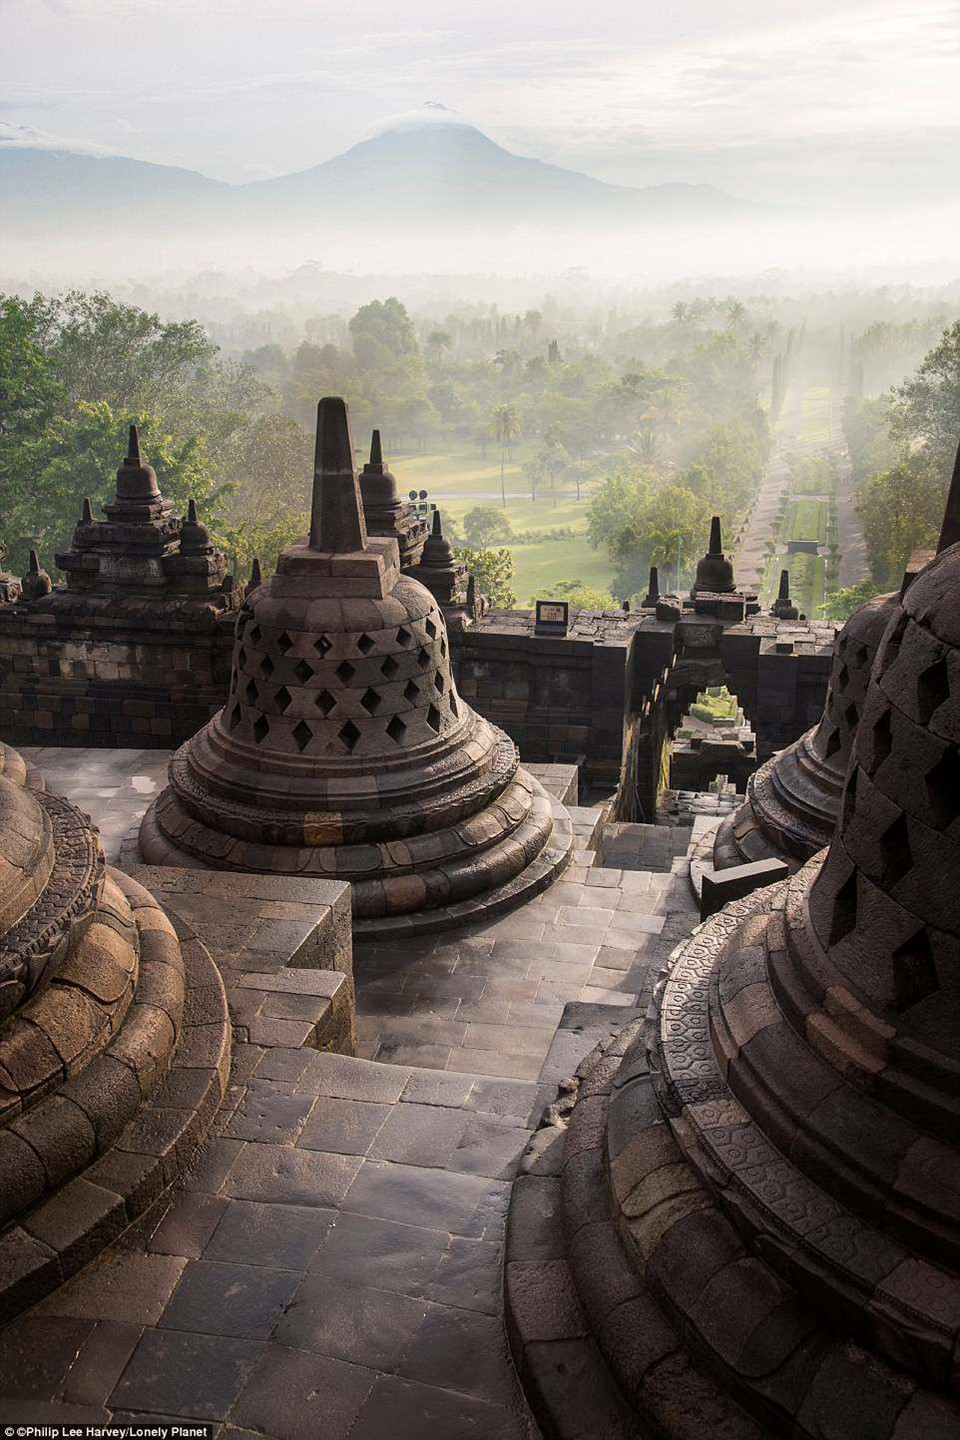 Borobudur là một ngôi chùa Phật giáo có từ thế kỷ thứ 9 nằm trên một ngọn đồi ở miền trung đảo Java, Indonesia. Đây là ngôi chùa Phật giáo lớn nhất thế giới và là một di sản của UNESCO.